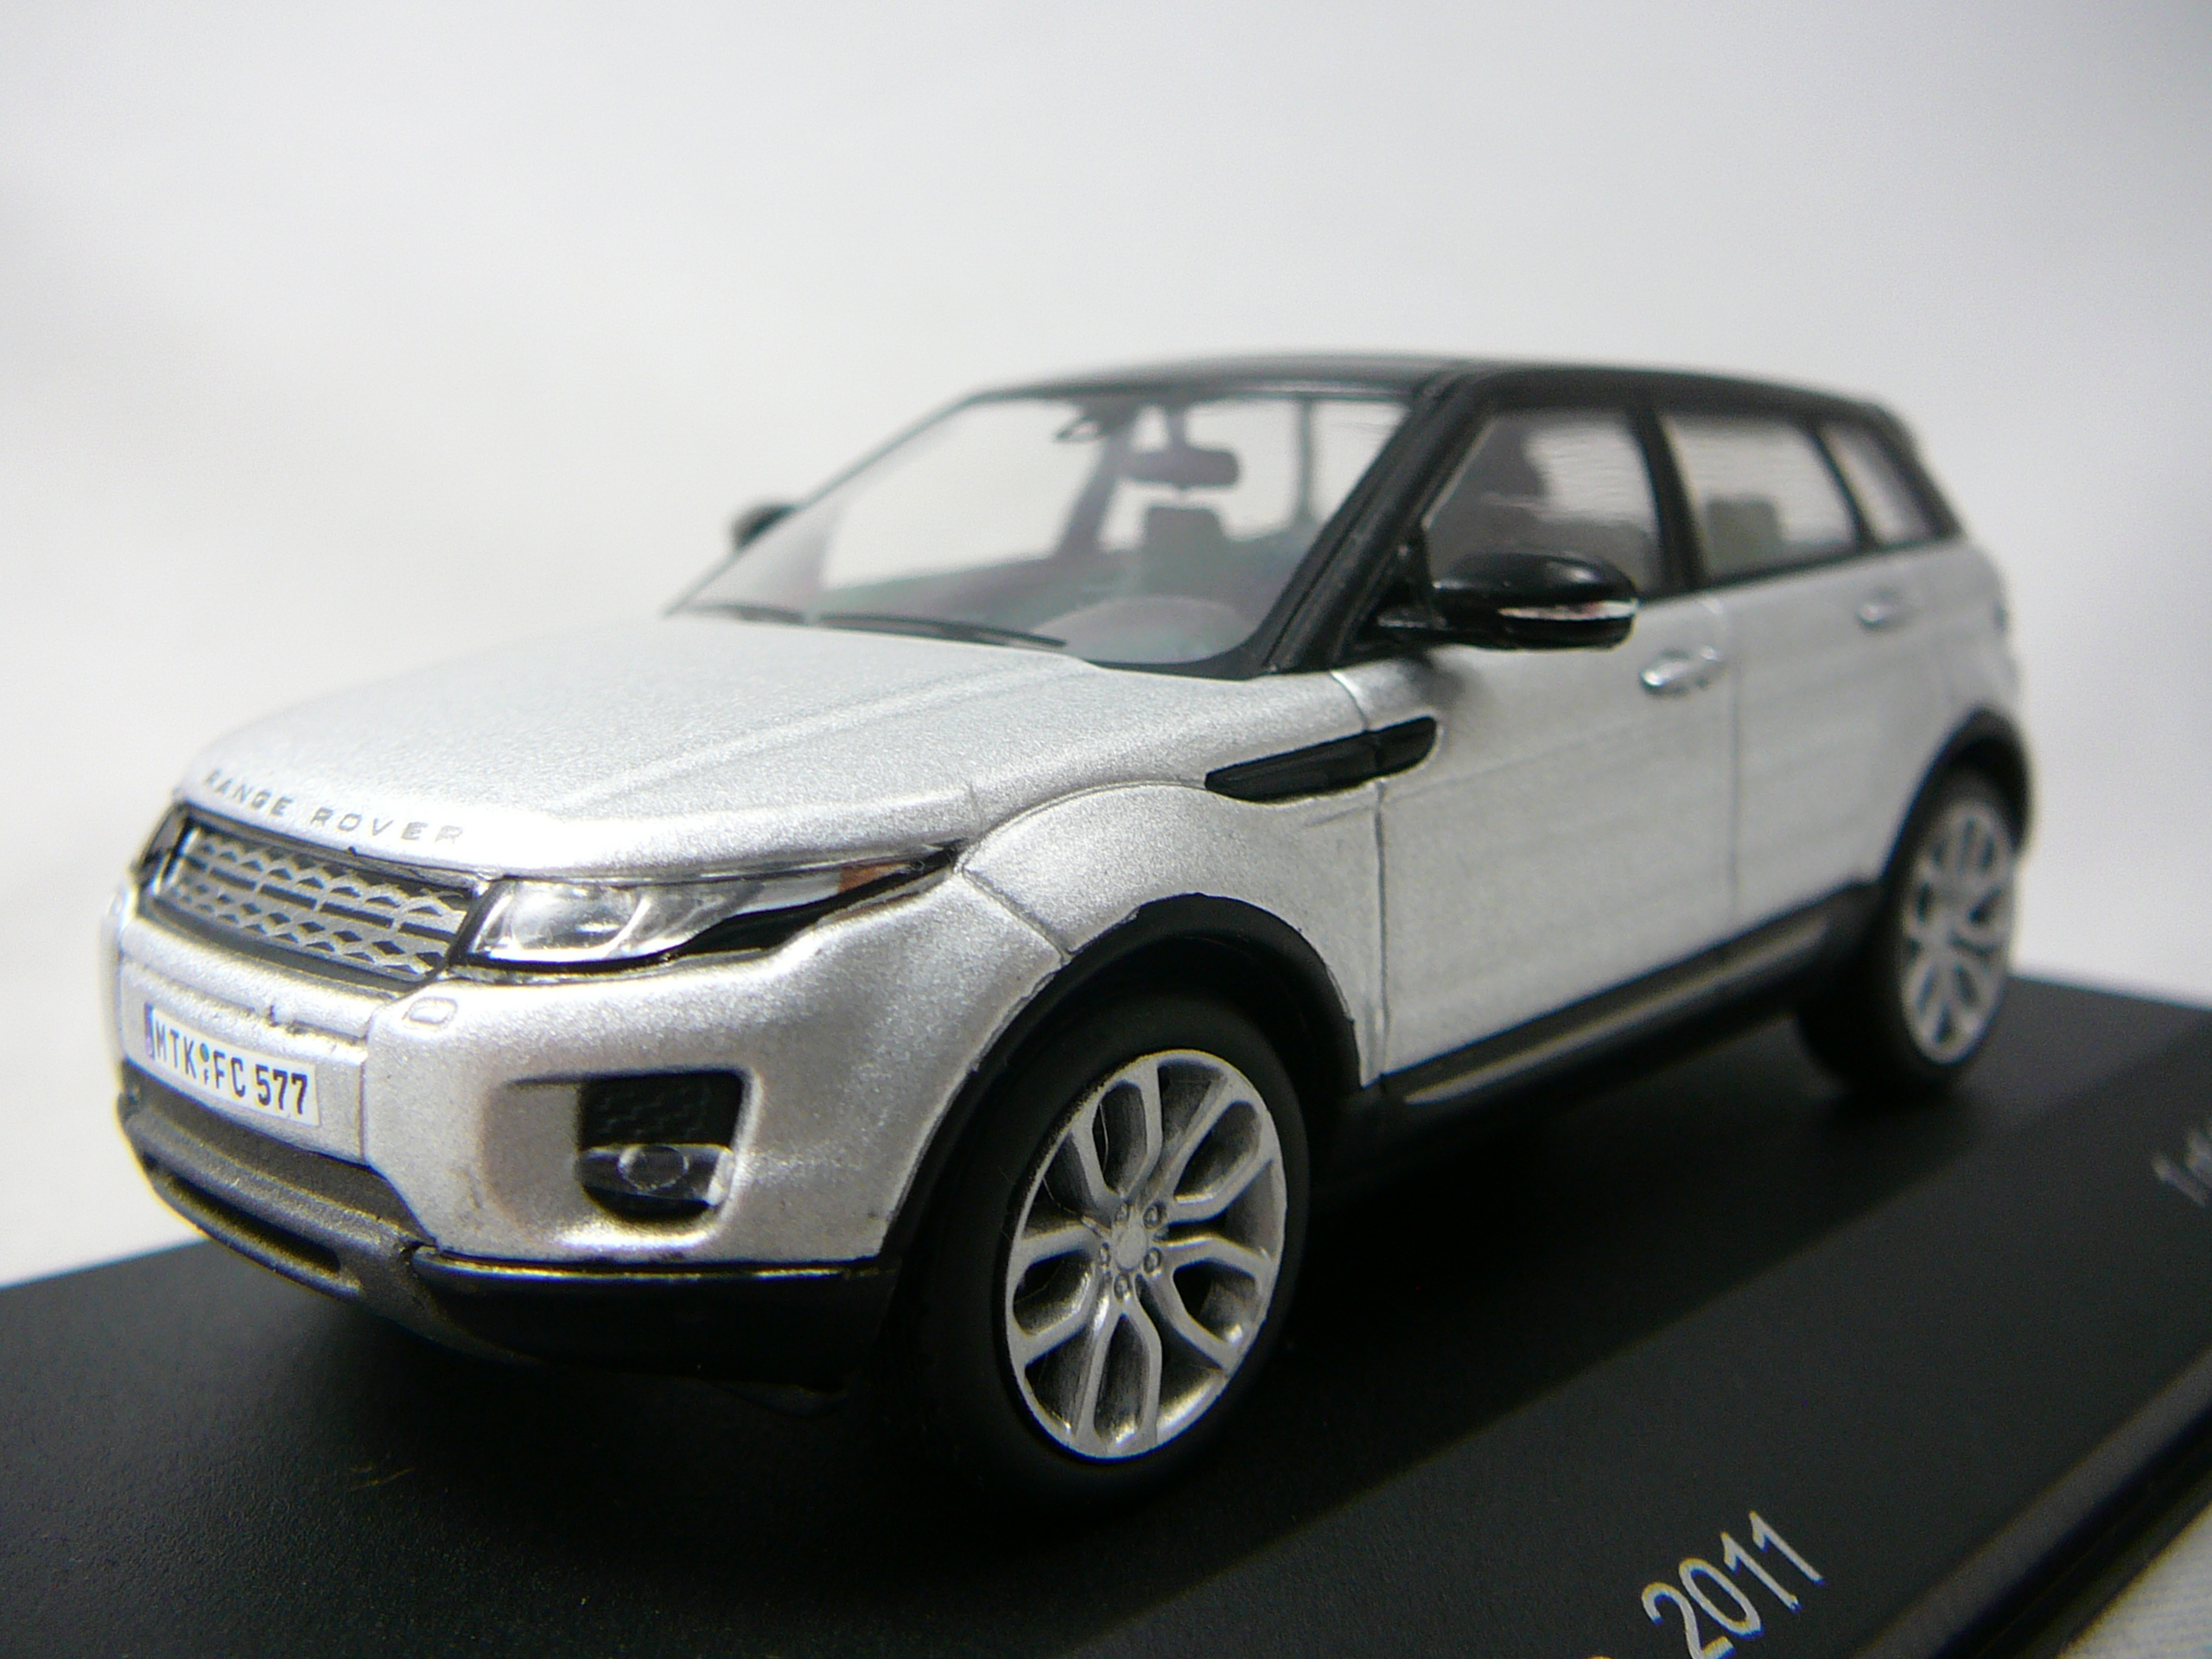 Range Rover Evoque 2011 Miniature 1/43 White Box